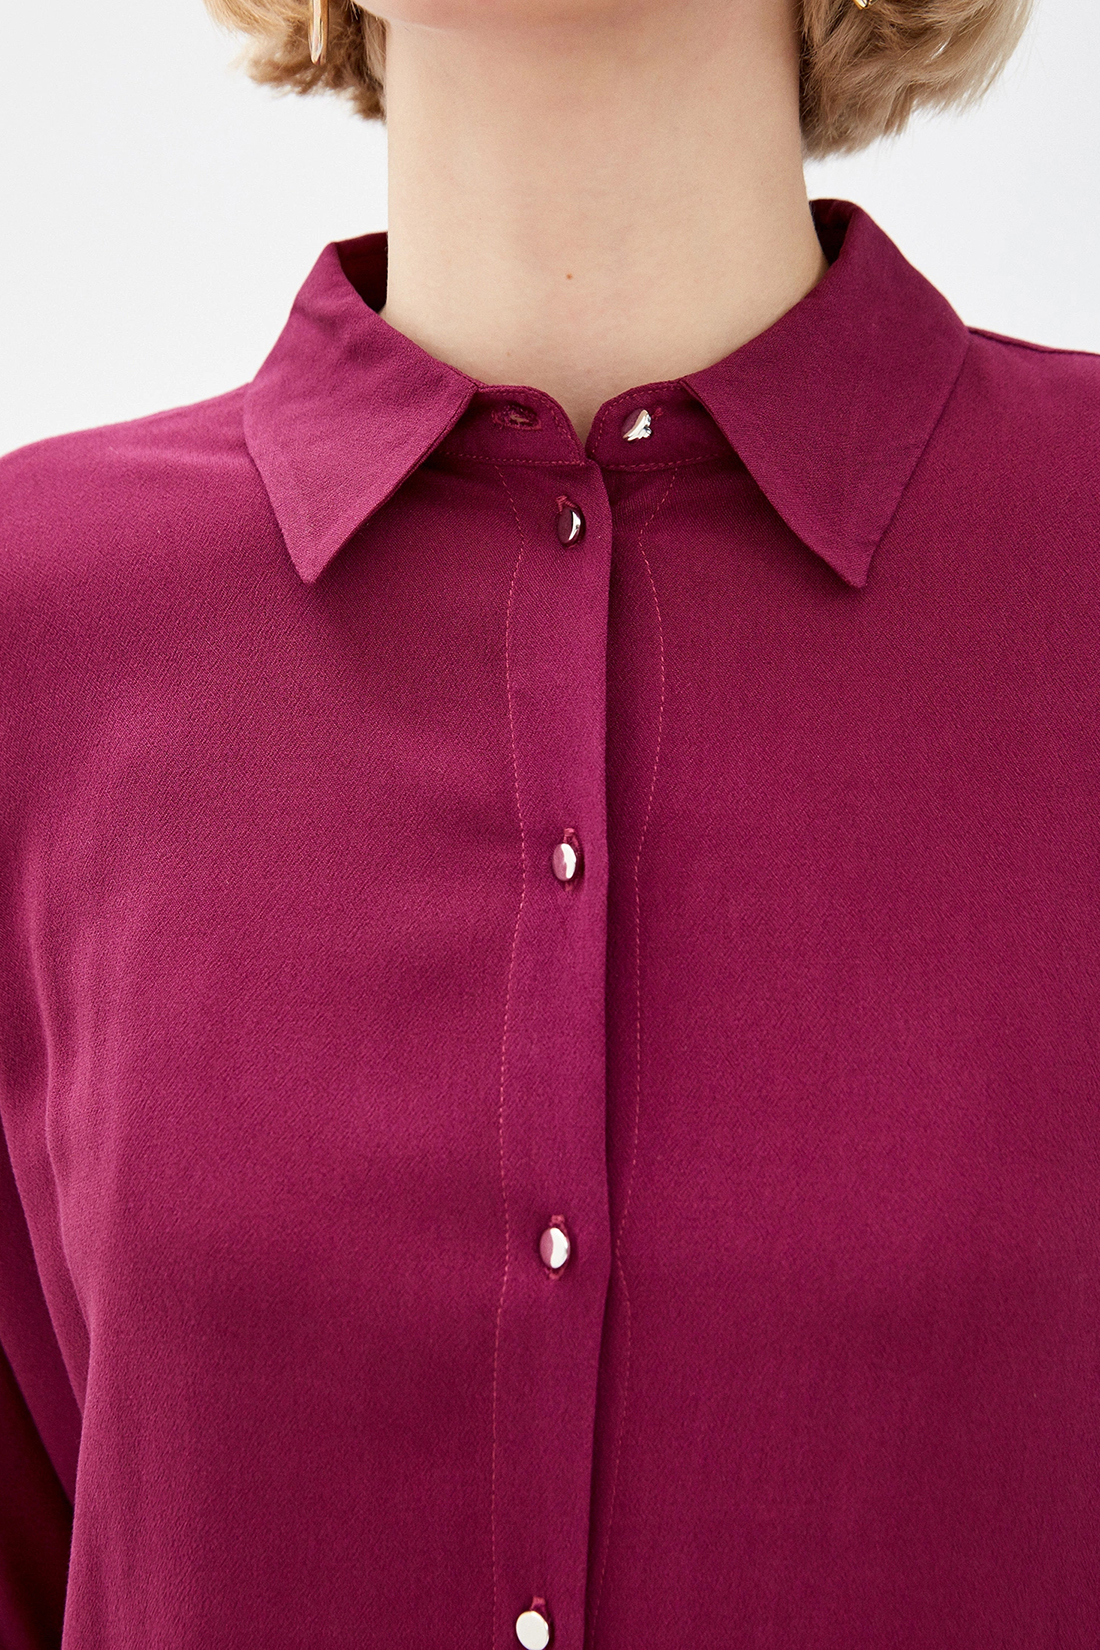 Рубашка в стиле оверсайз (арт. baon B170012), размер XXL, цвет красный Рубашка в стиле оверсайз (арт. baon B170012) - фото 3